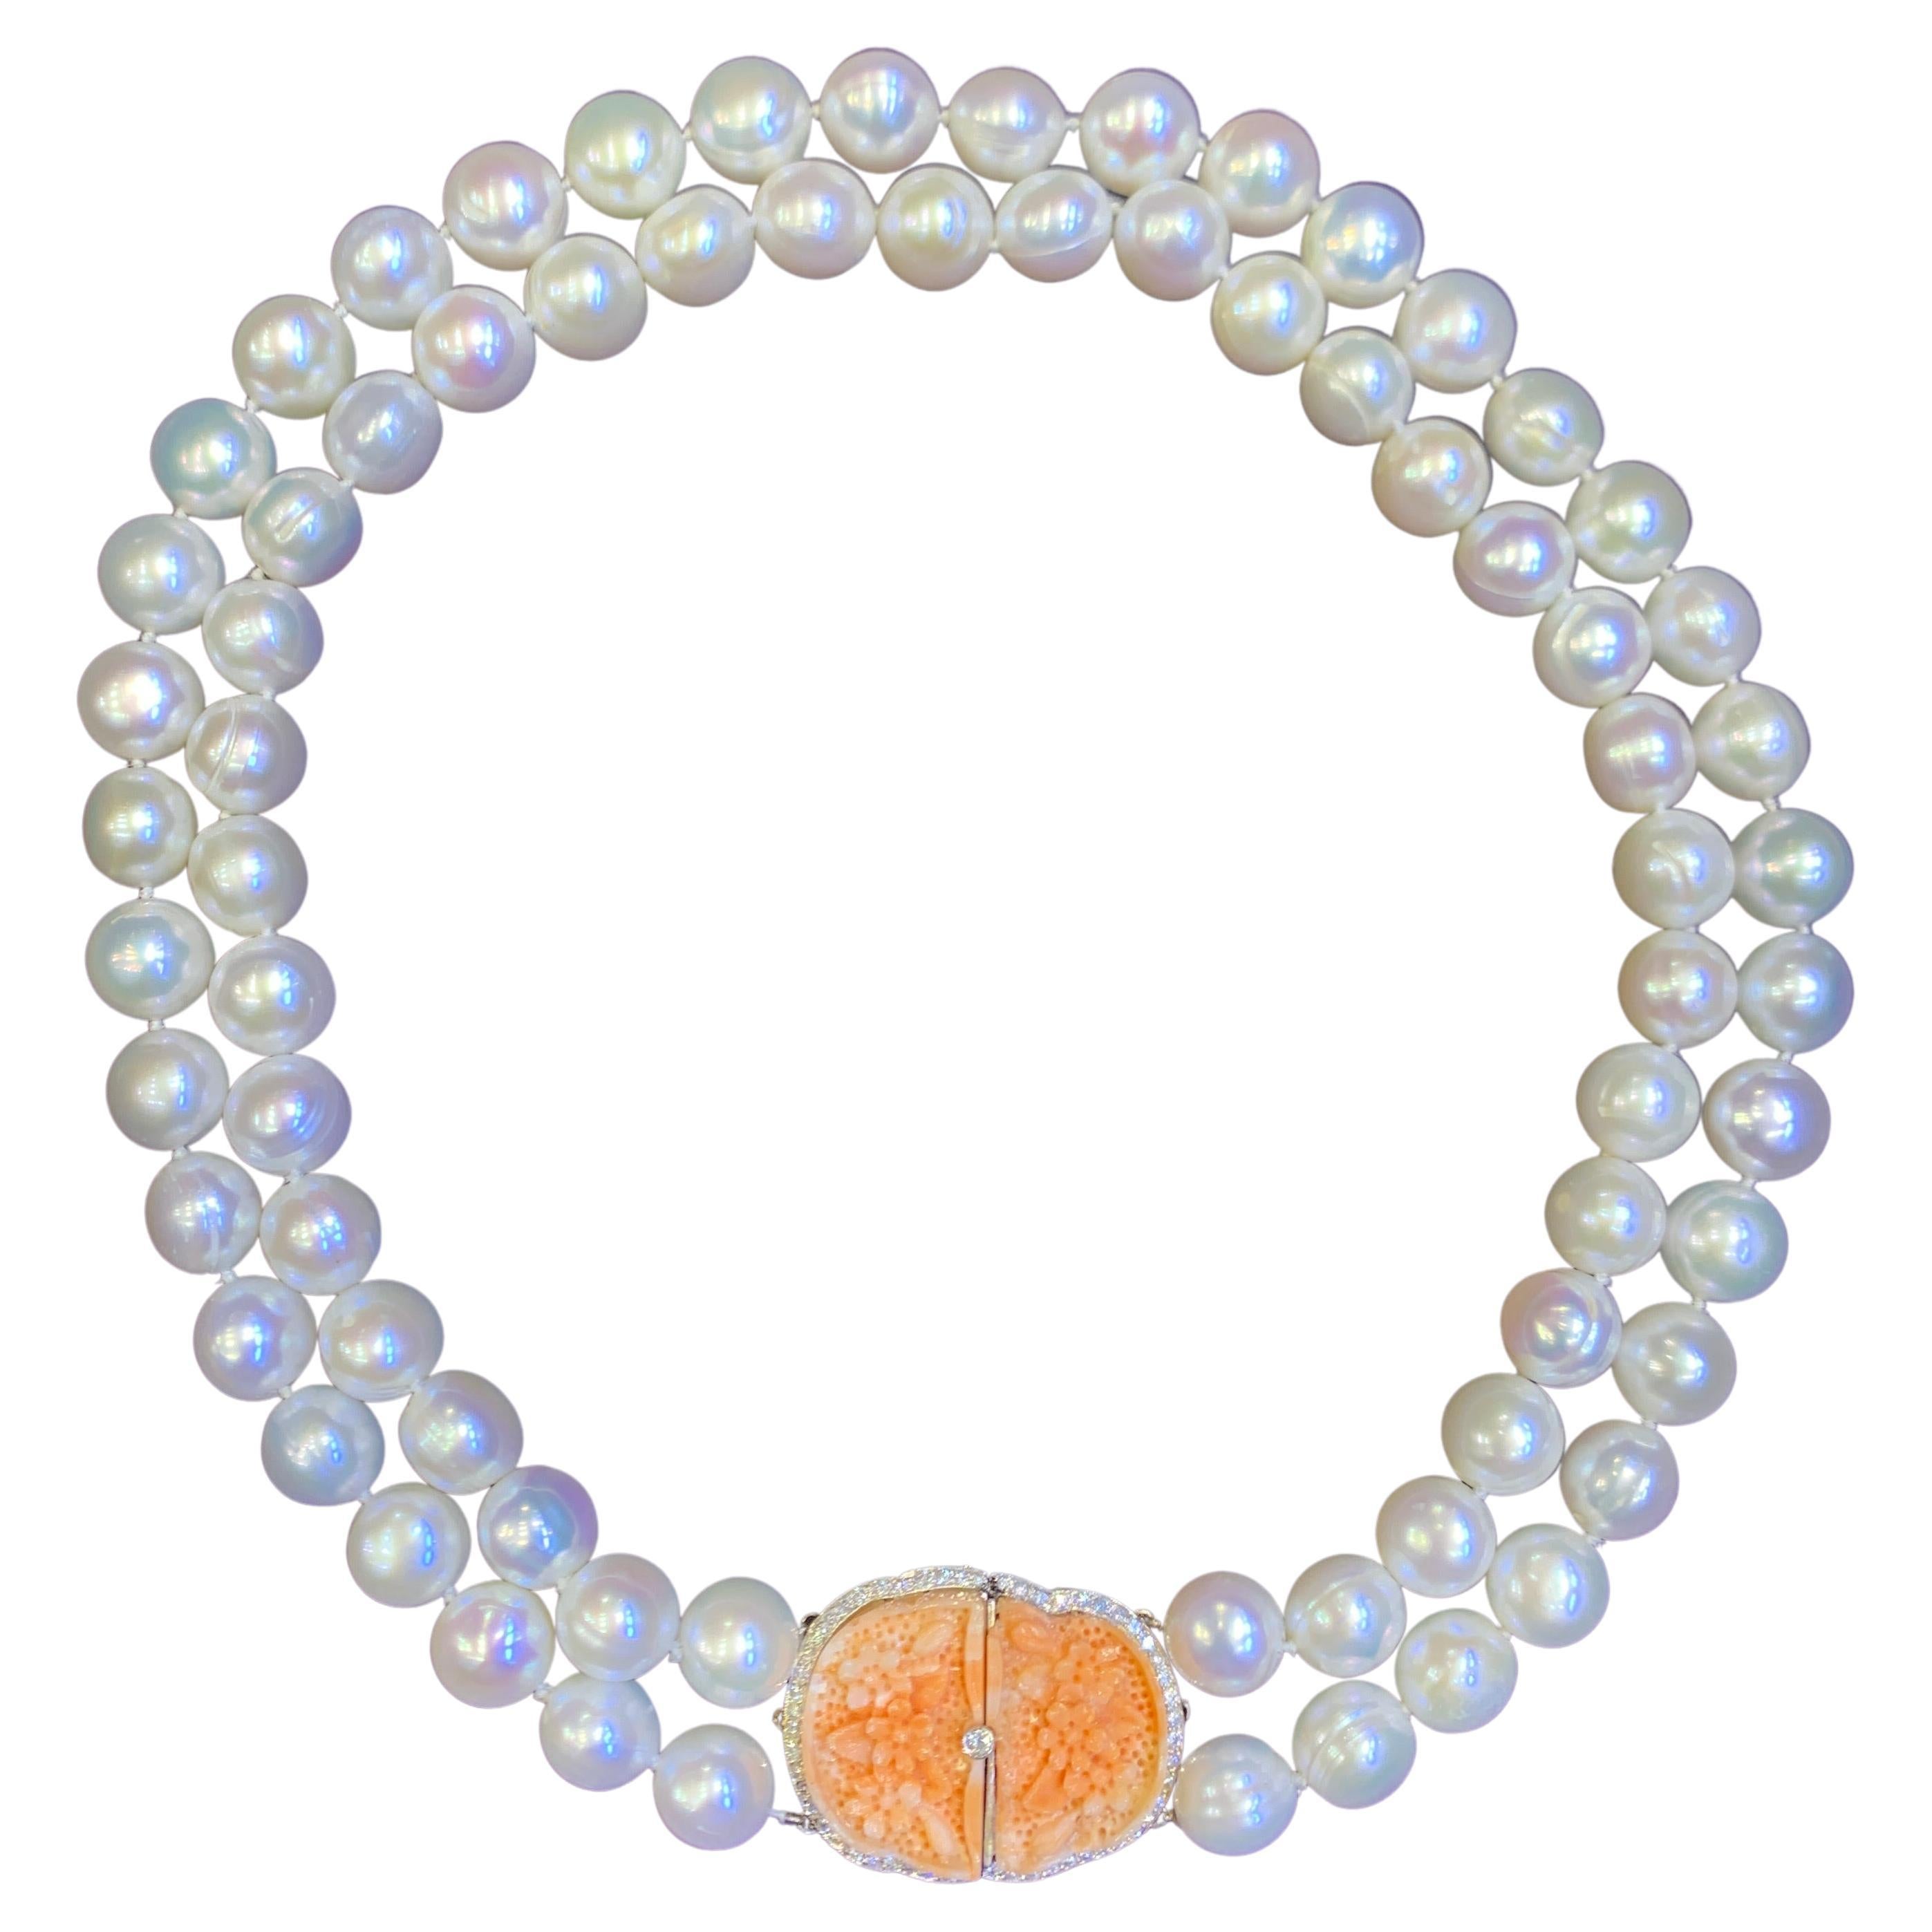 Zweireihige Perlen- und Korallenhalskette mit Schnitzereien